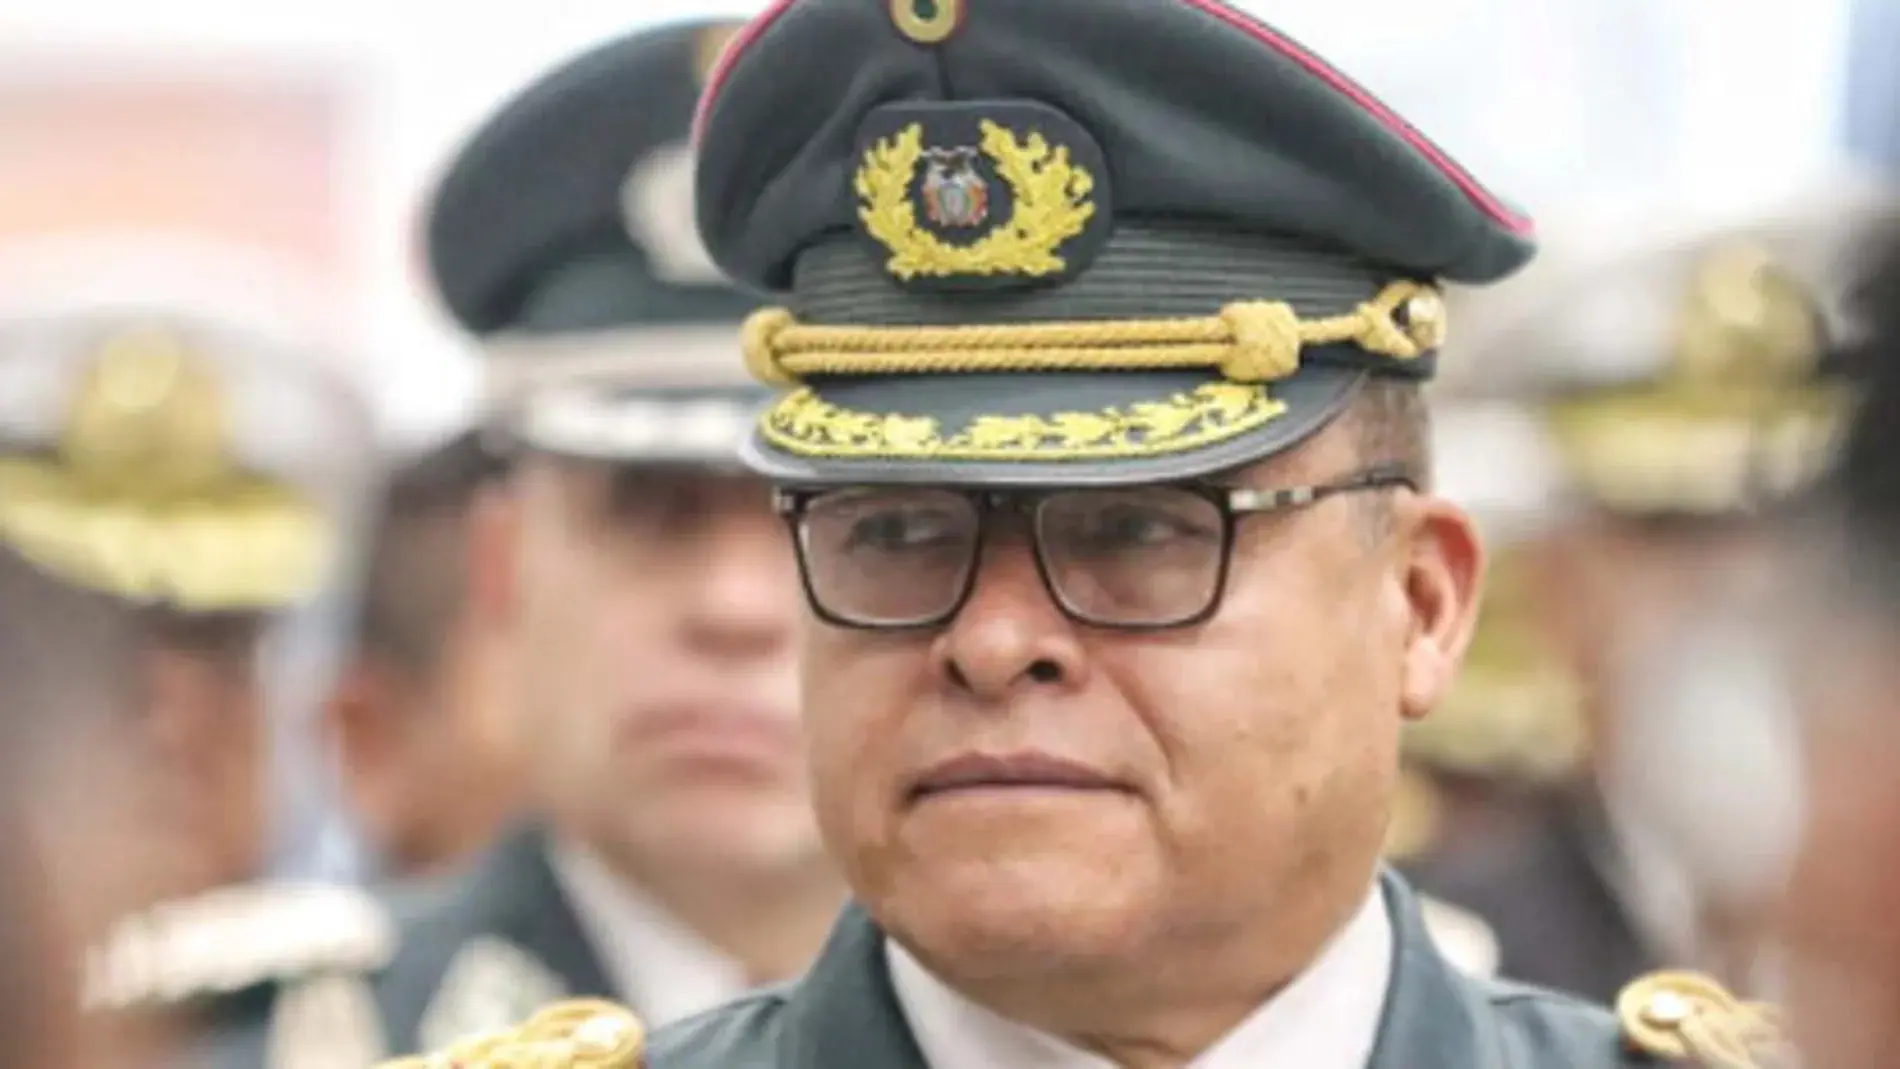 Zuñiga no concretó el "alzamiento" en Bolivia porque sus refuerzos "tardaron en llegar". Foto fuente externa